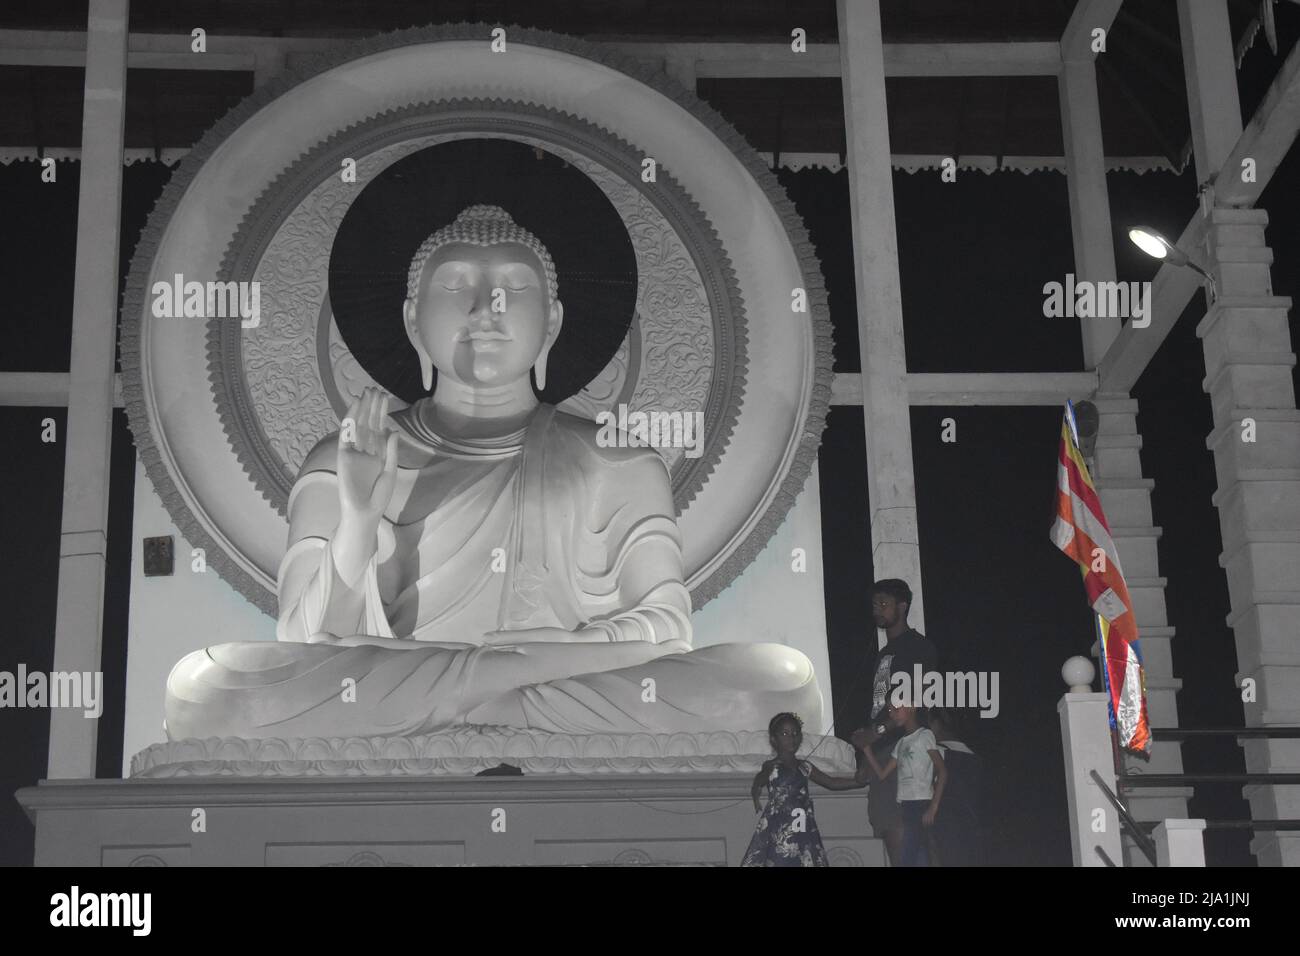 Une statue de Bouddha à un temple. Gautama Bouddha était un professeur ascétique et spirituel de l'Inde ancienne qui a vécu pendant la seconde moitié du premier millénaire BCE. Il a été le fondateur du bouddhisme et est vénéré par les bouddhistes comme un être éclairé dont les enseignements cherchaient un chemin vers la liberté de l'ignorance, de la soif, de la renaissance et de la souffrance. Colombo, Sri Lanka. Banque D'Images